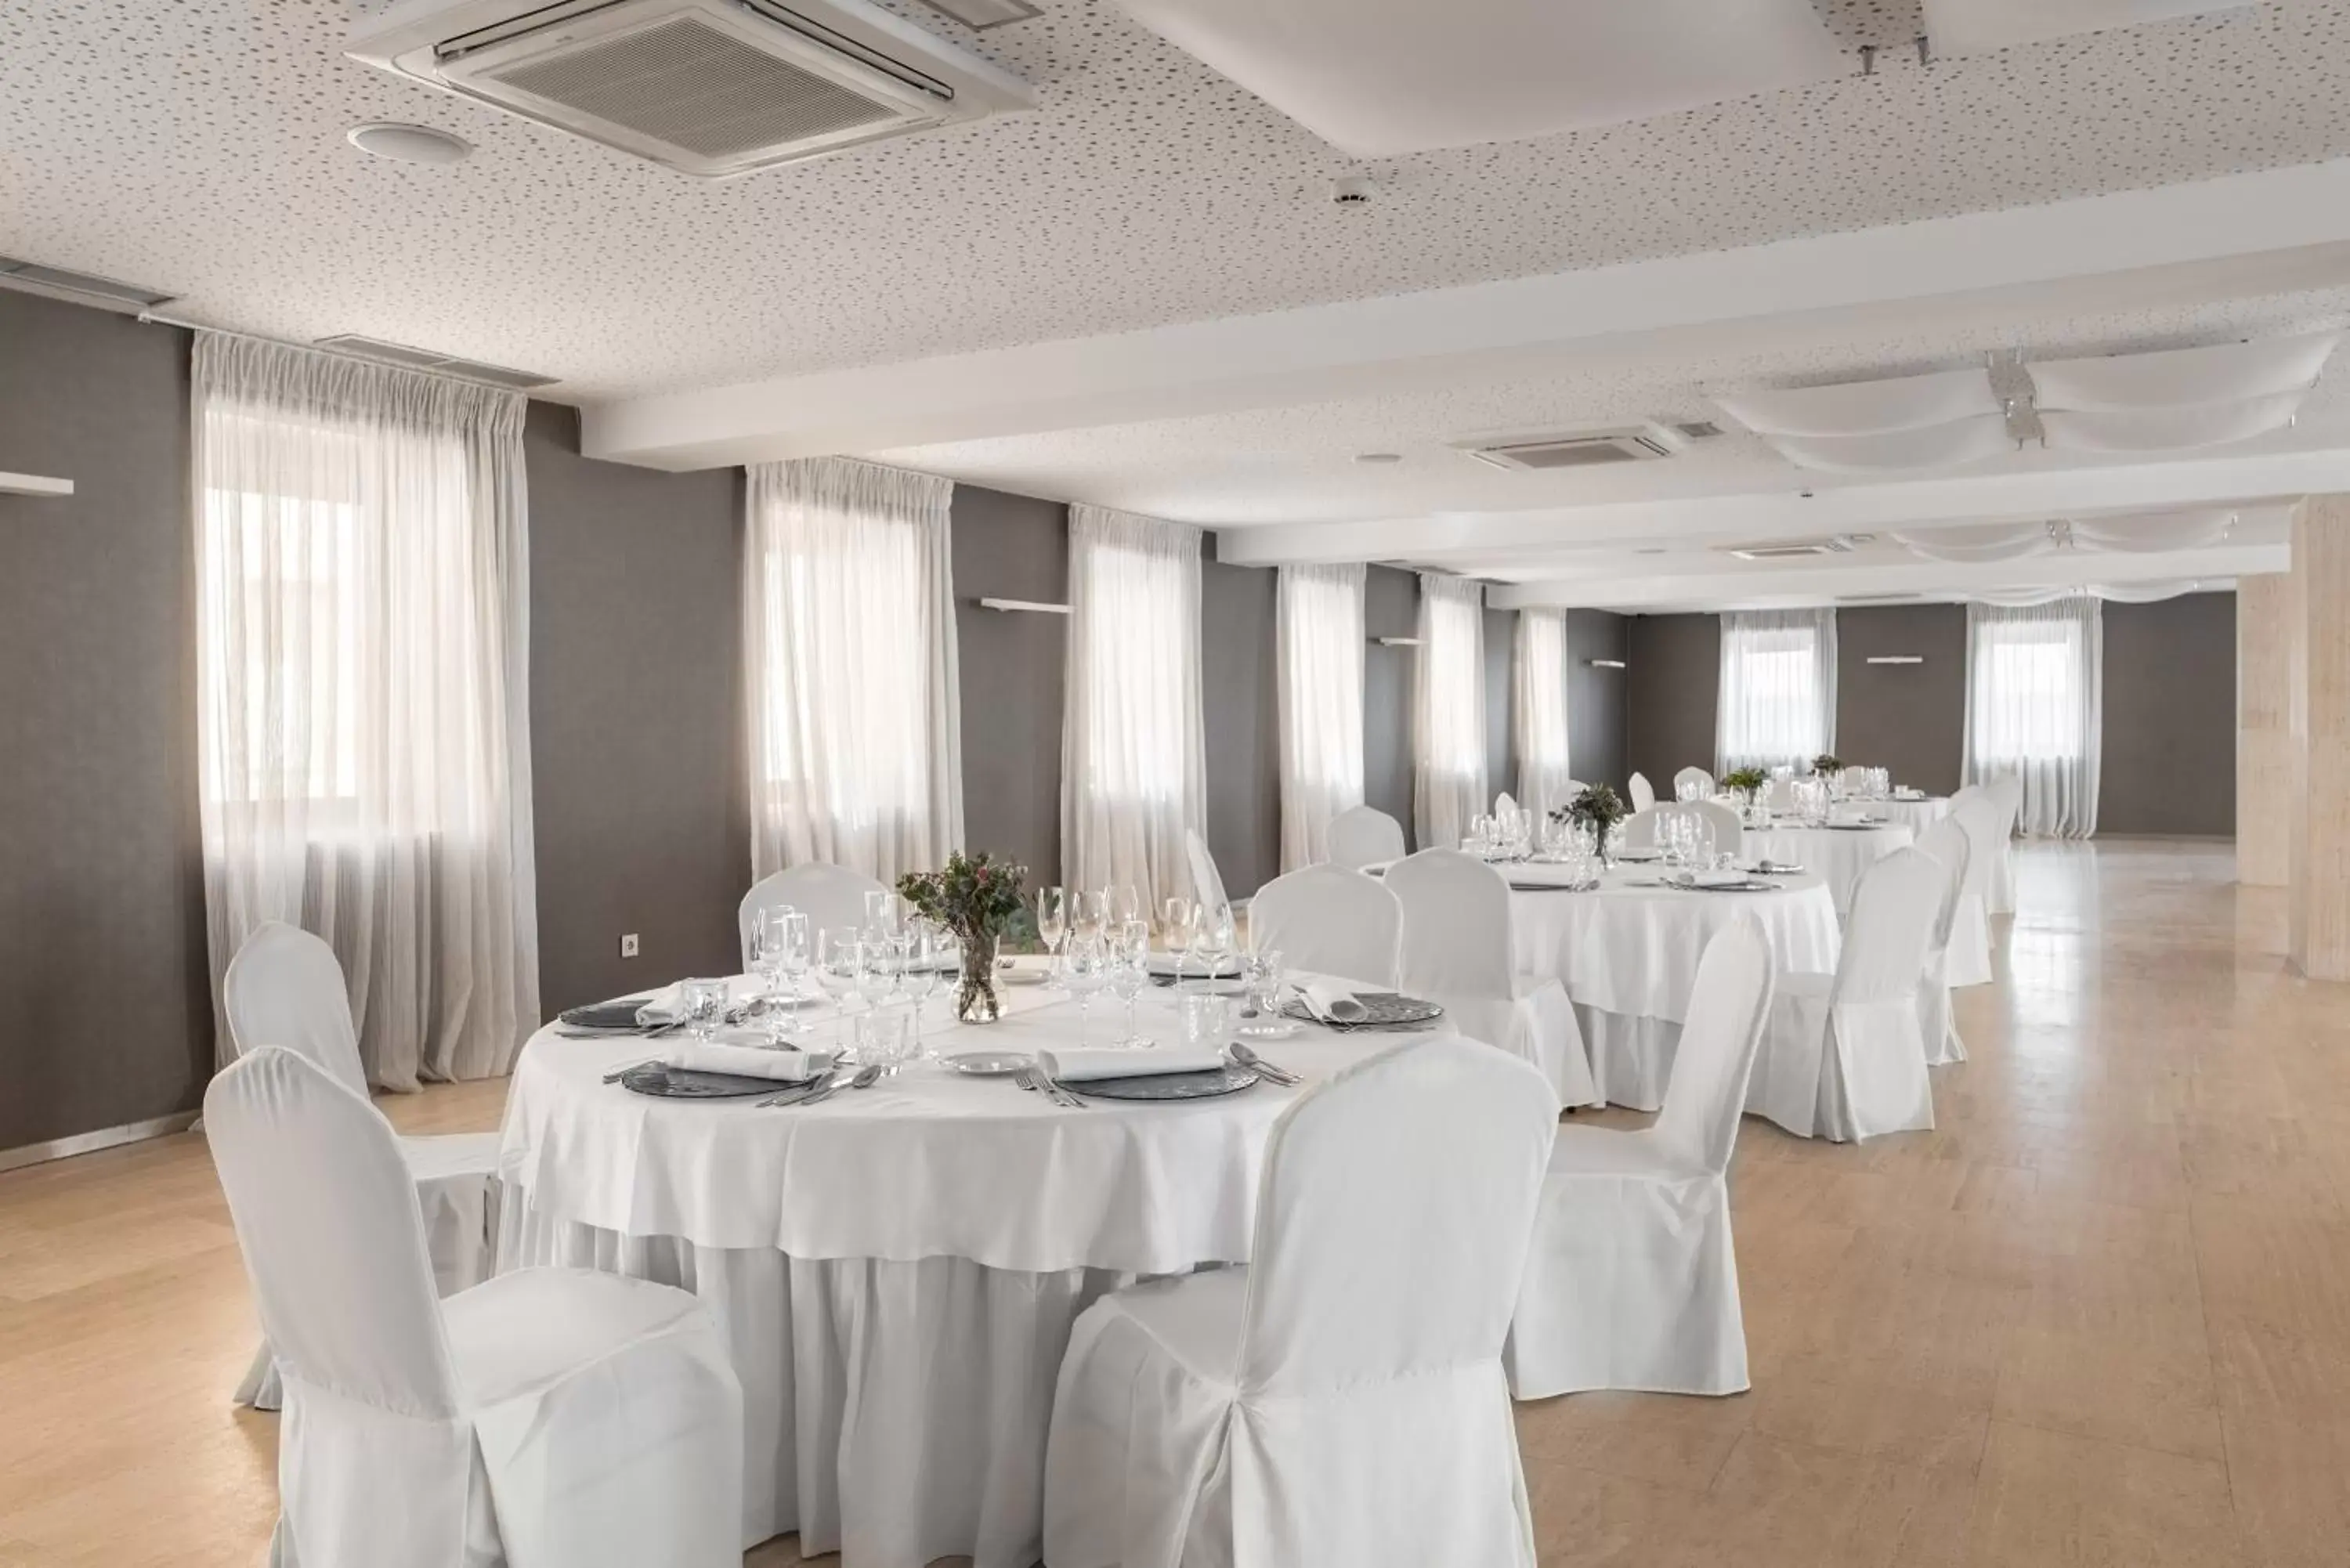 Banquet/Function facilities, Banquet Facilities in Eurostars Vía de la Plata